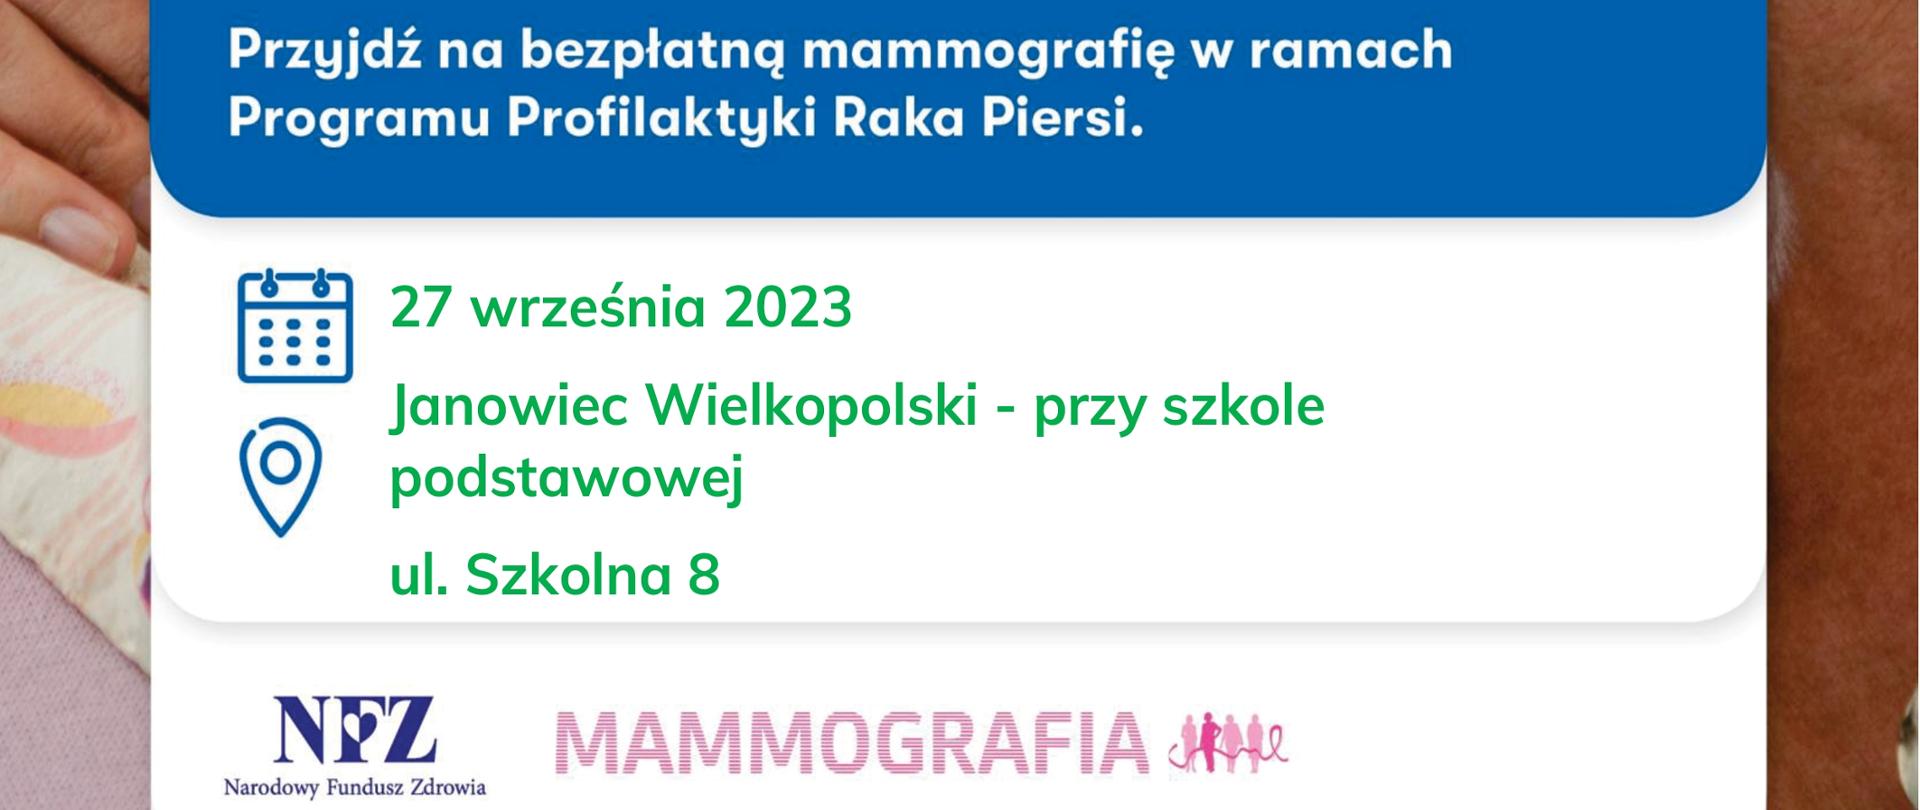 Zapraszamy do mobilnej pracowni mammograficznej LUX MED: Janowiec Wielkopolski – 27 września w godzinach od 9.00 do 15.00 przy szkole podstawowej, ul. Szkolna 8